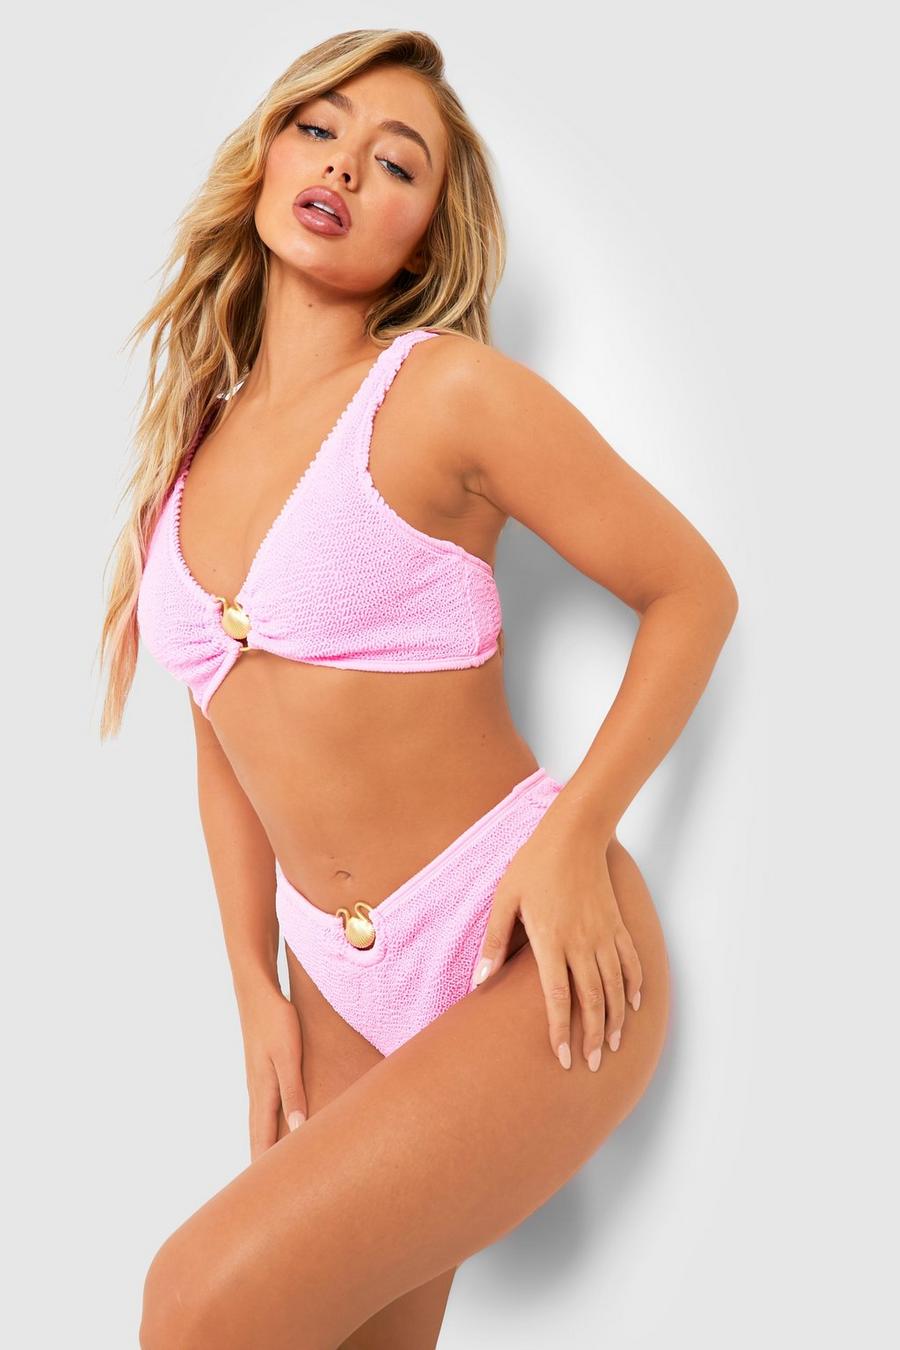 Muschelsaum-Bikinihose mit hohem Bund in Knitteroptik, Candy pink